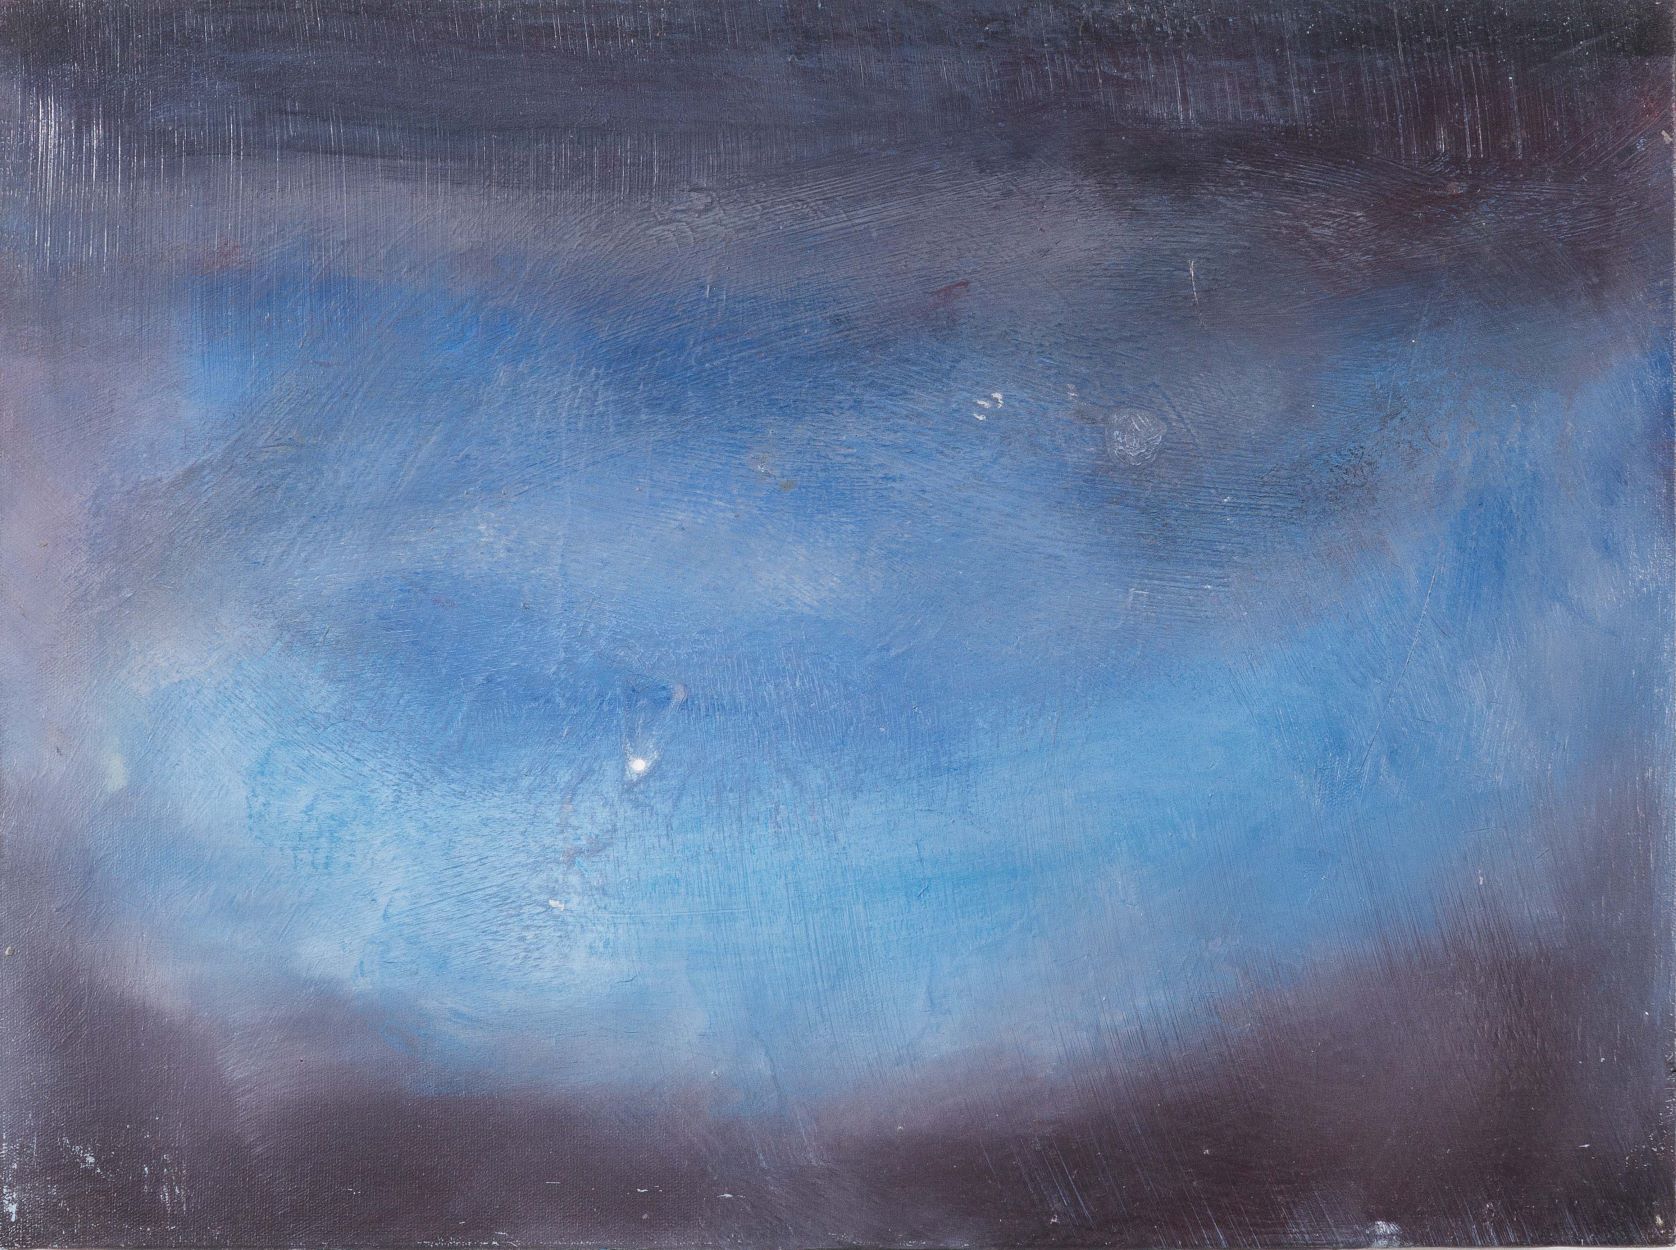 04.paulo lobo. por do sol em marte 04, 2015, óleo s tela colada em chapa de madeira, 30x40cm